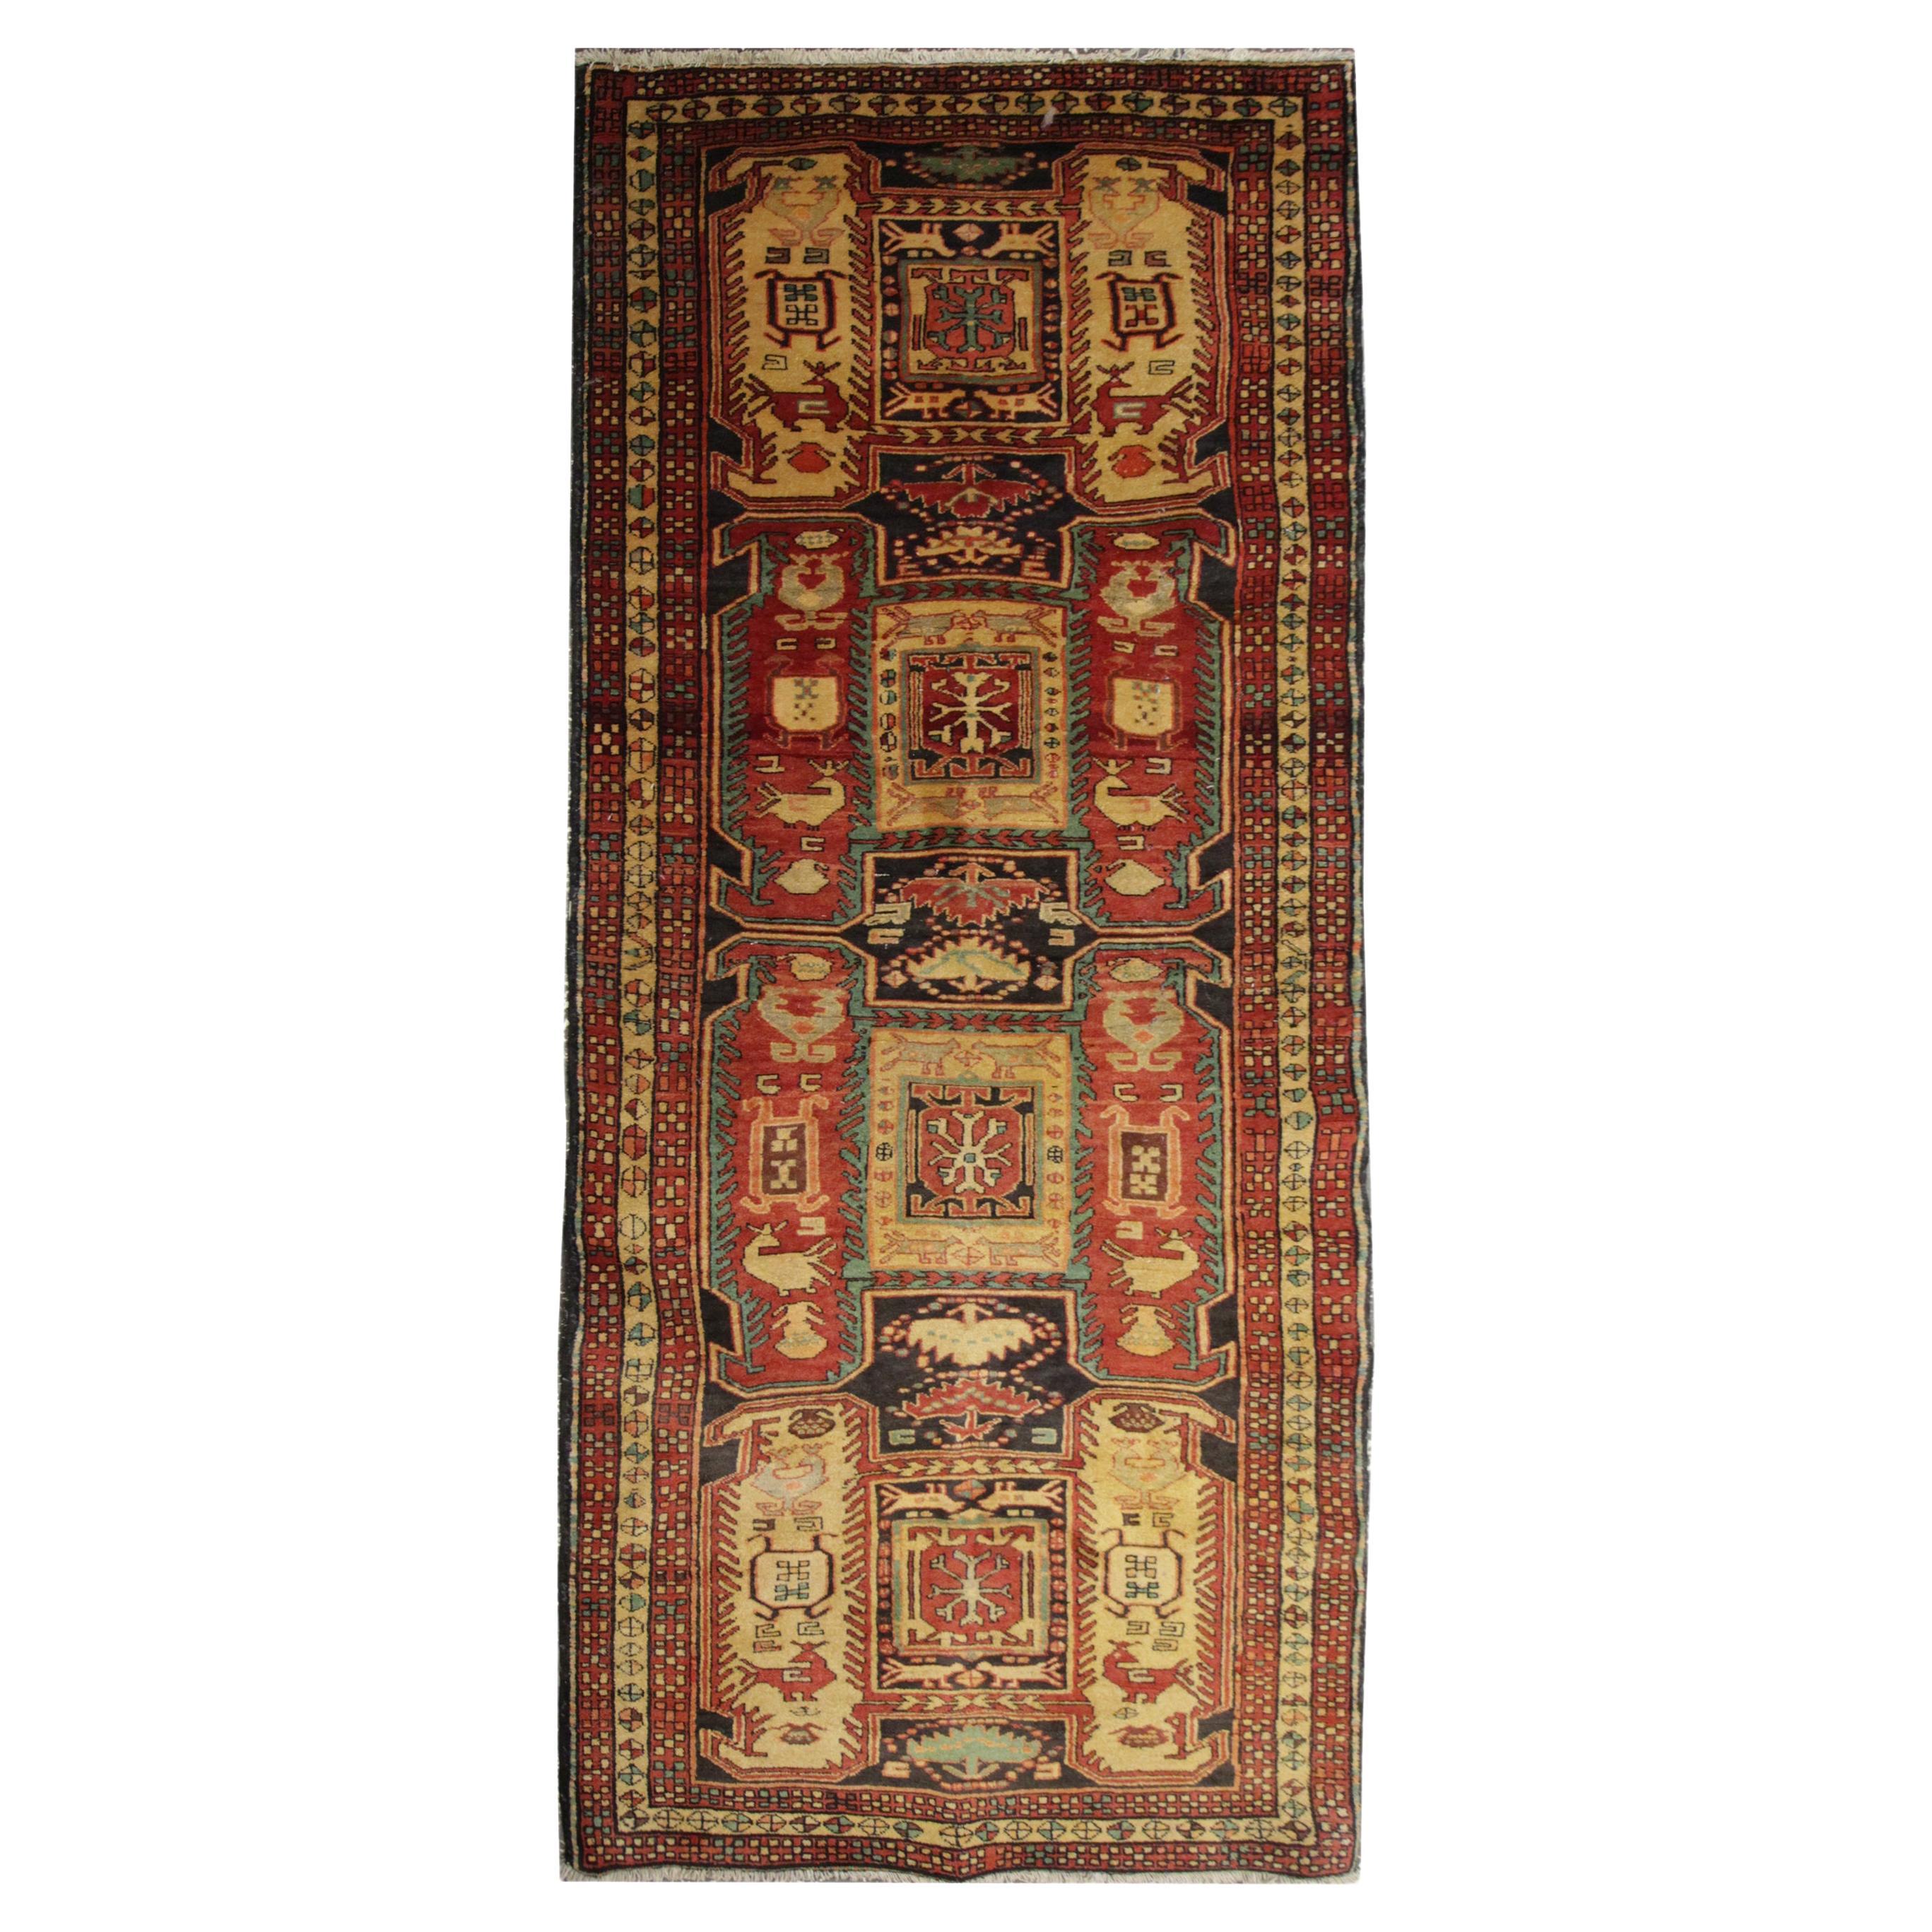 Handmade Carpet Runners Rugs, Antique Rugs Geometric Stair Runner Oriental Rug